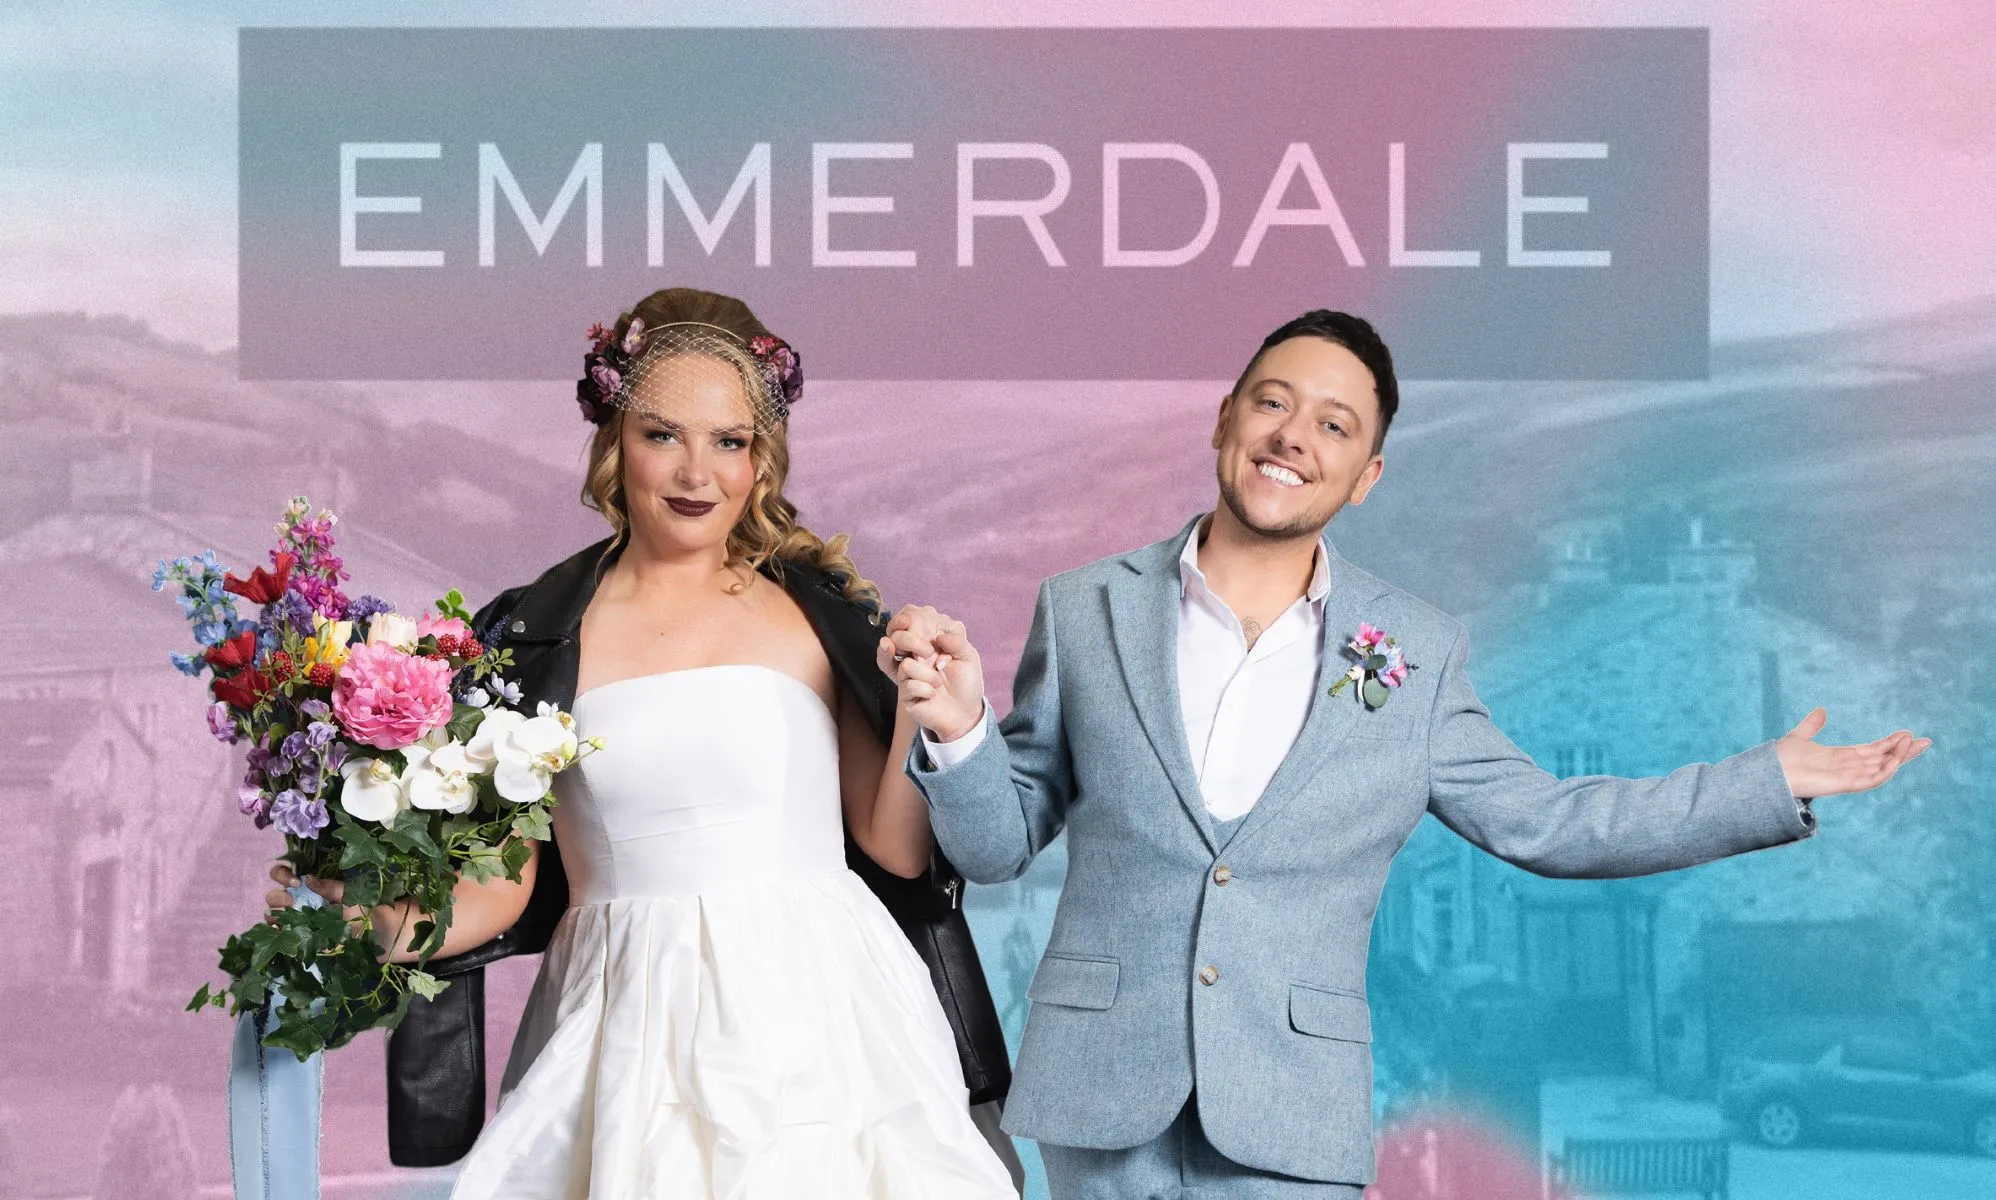 La primera boda trans de Emmerdale envía un mensaje "hermoso", dice la estrella